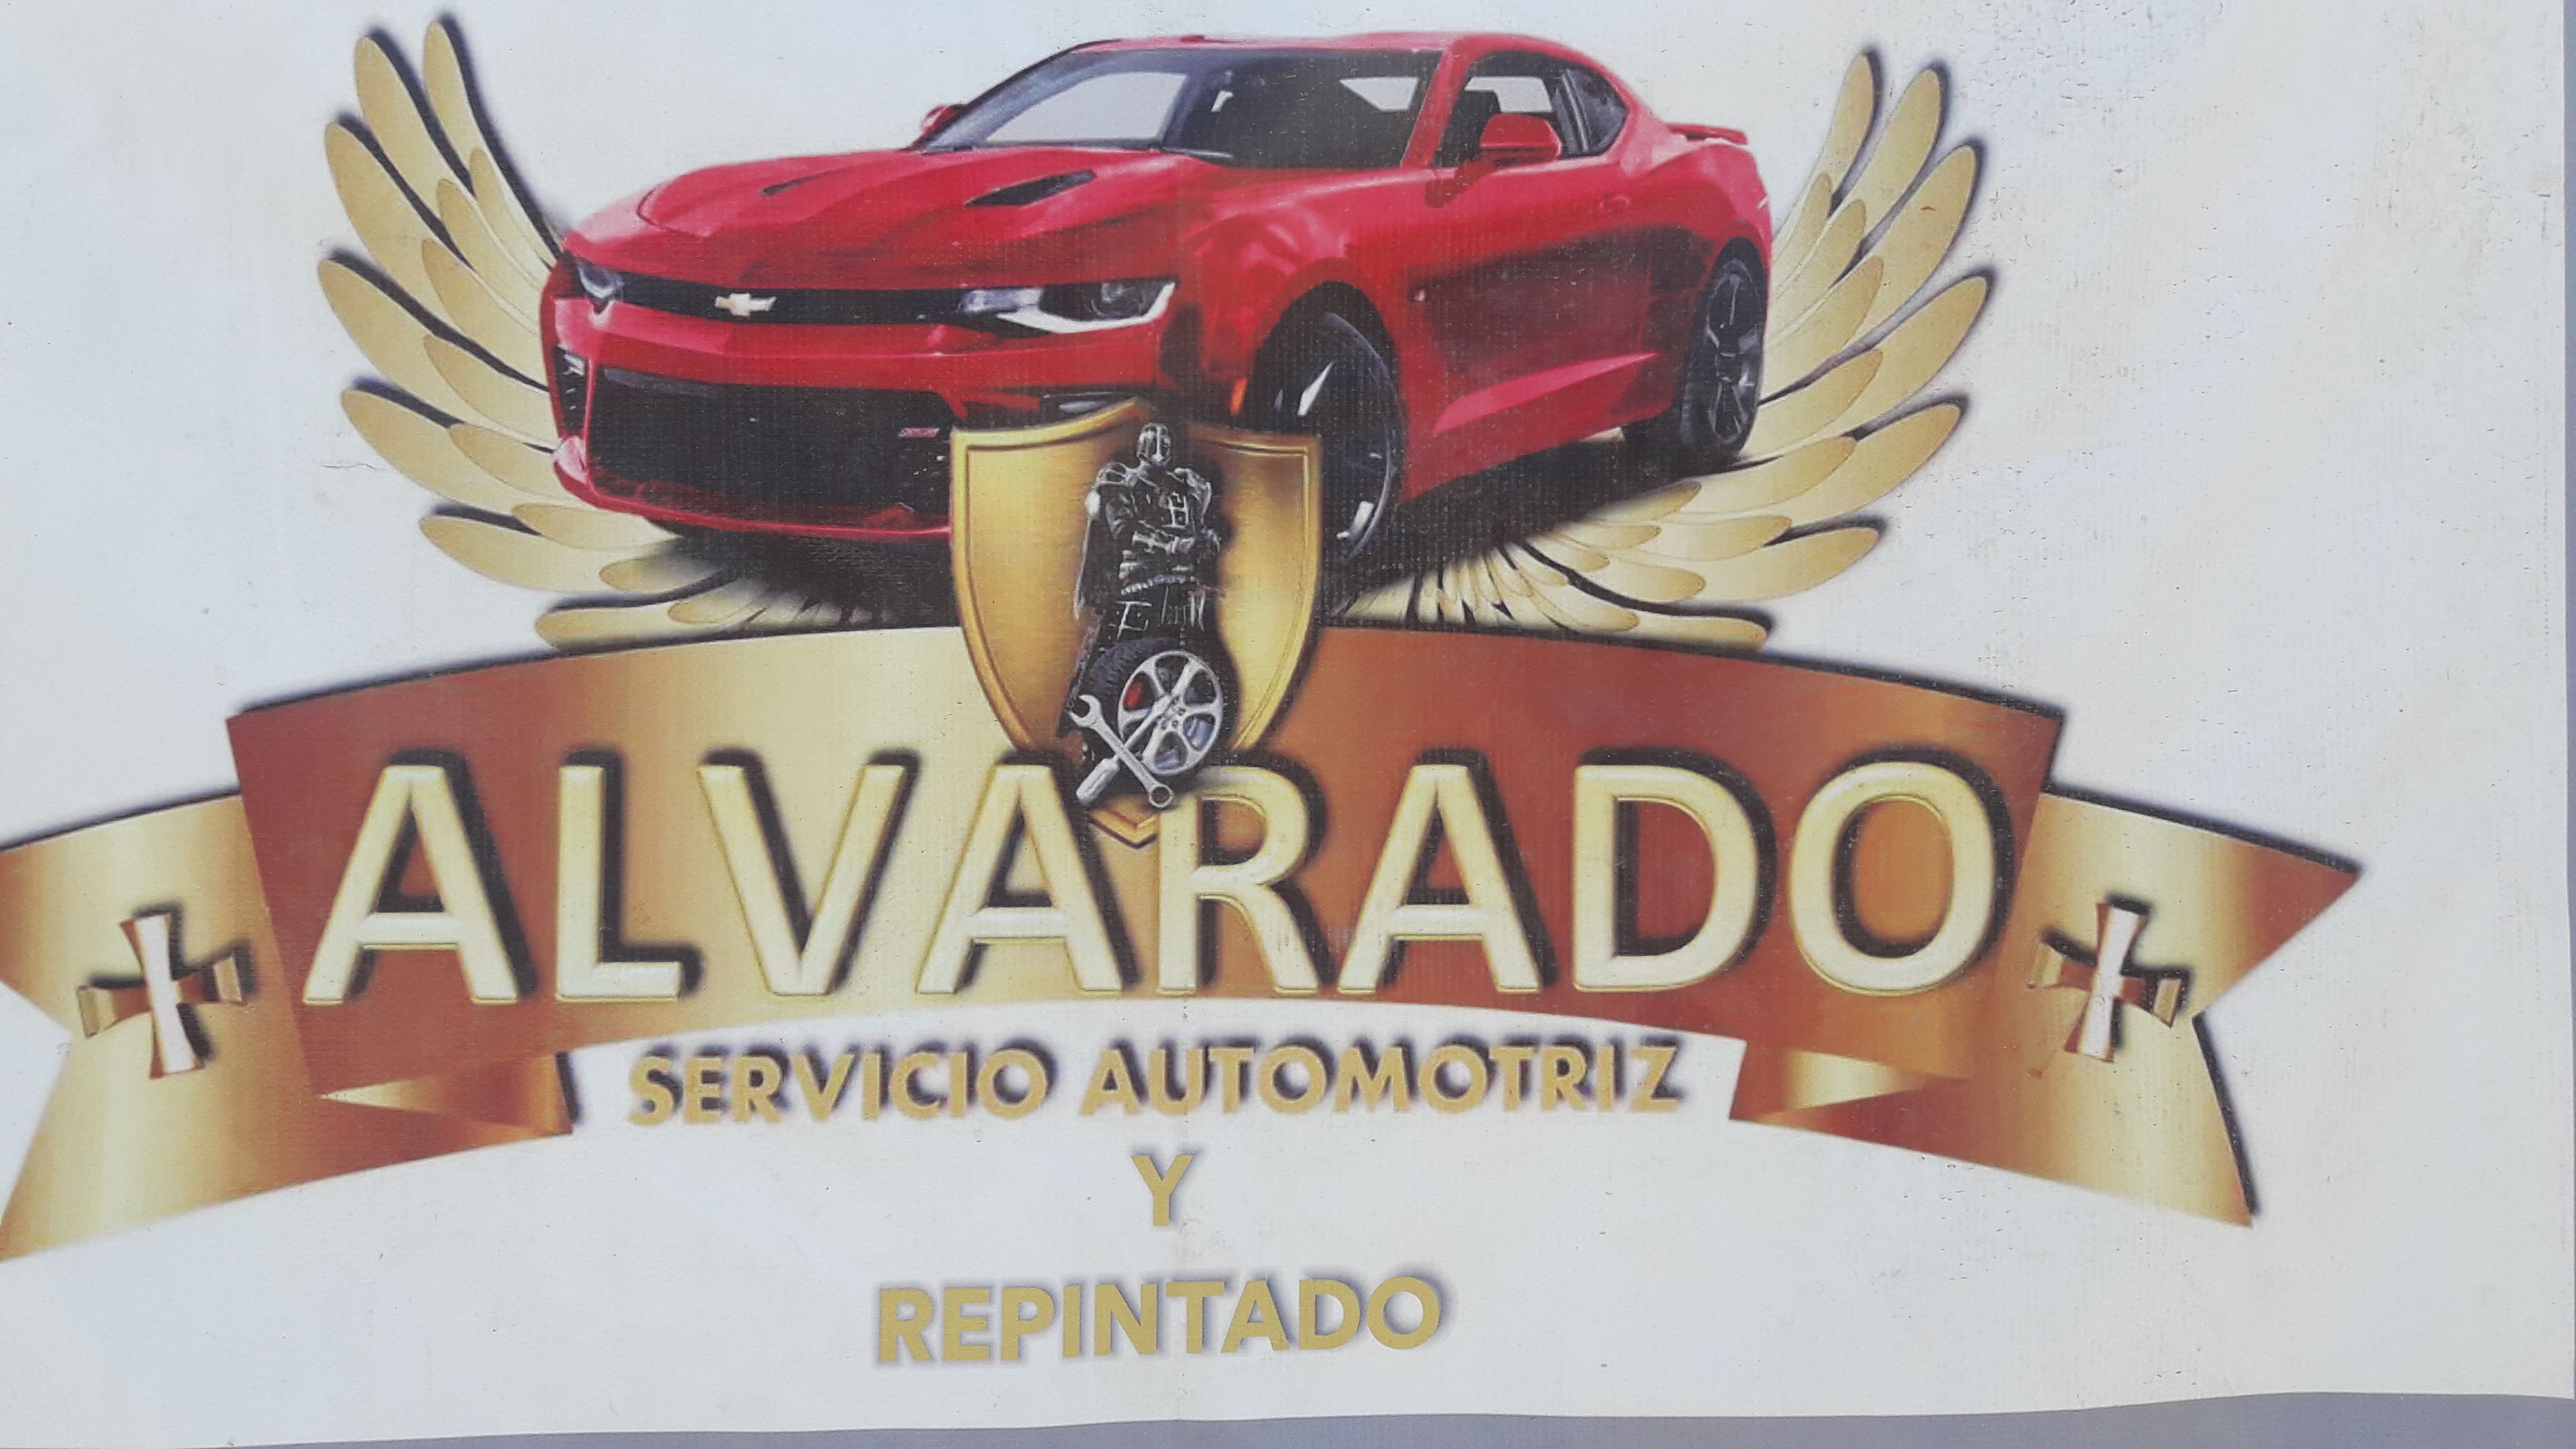 Taller Automotriz Alvarado